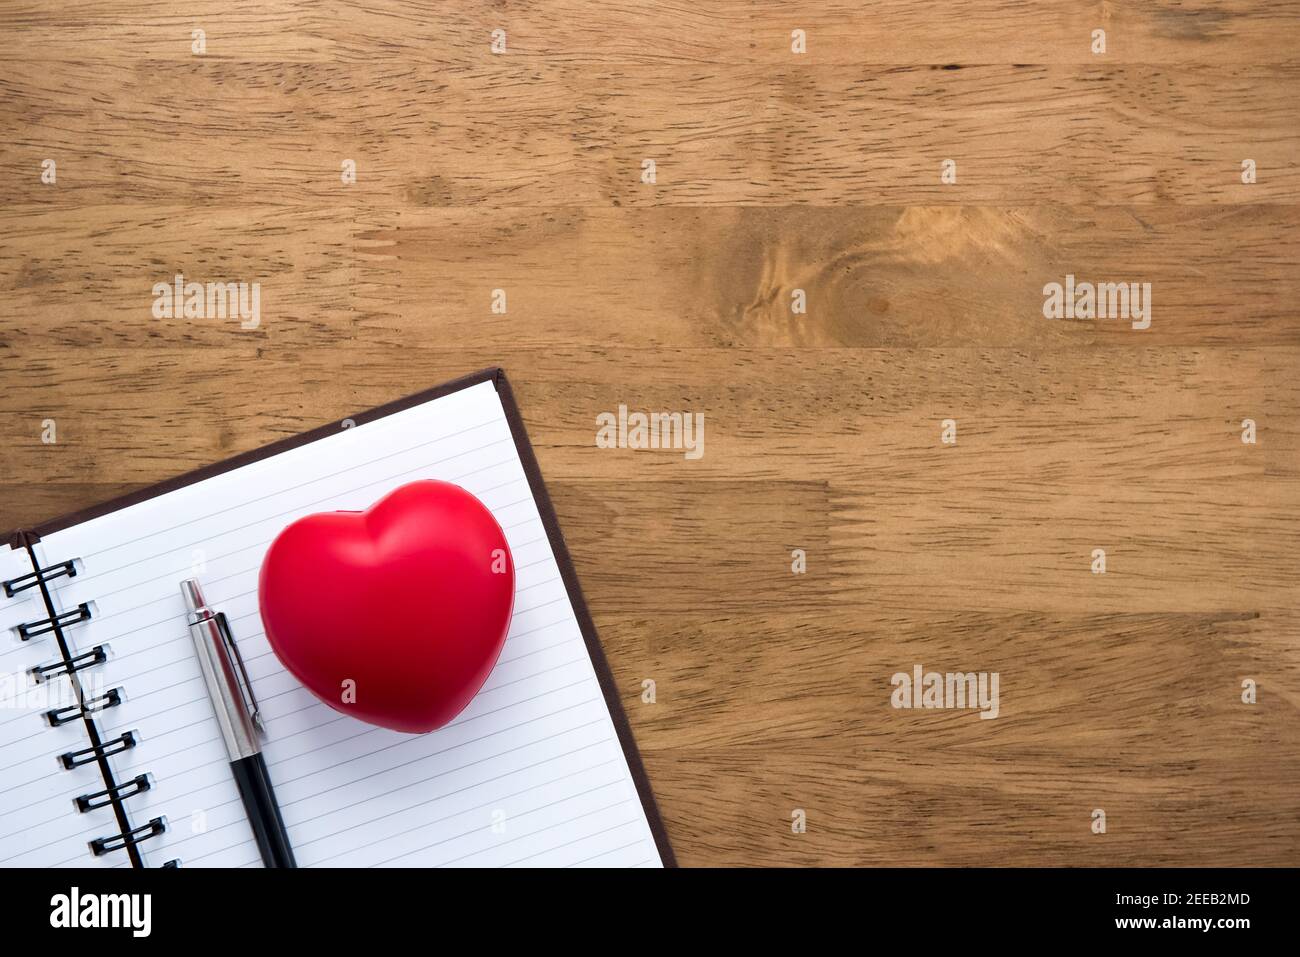 Notebook vuoto aperto con penna e sfera a forma di cuore sullo sfondo del tavolo in legno, vista dall'alto Foto Stock